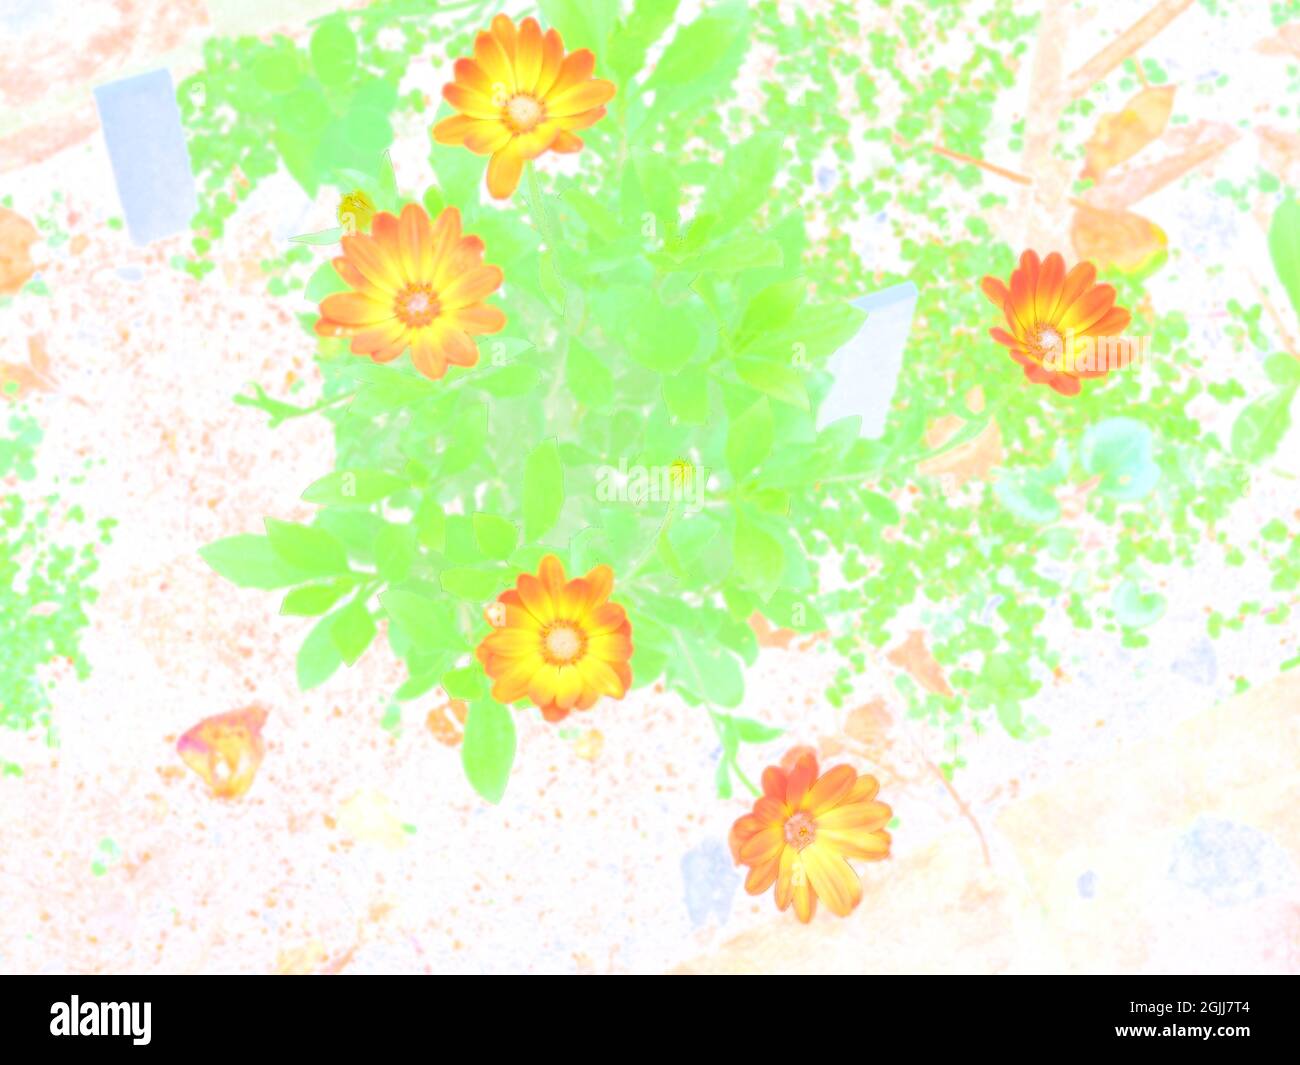 Un'immagine pop art a colori falsi di alcuni fiori arancioni luminosi Foto Stock